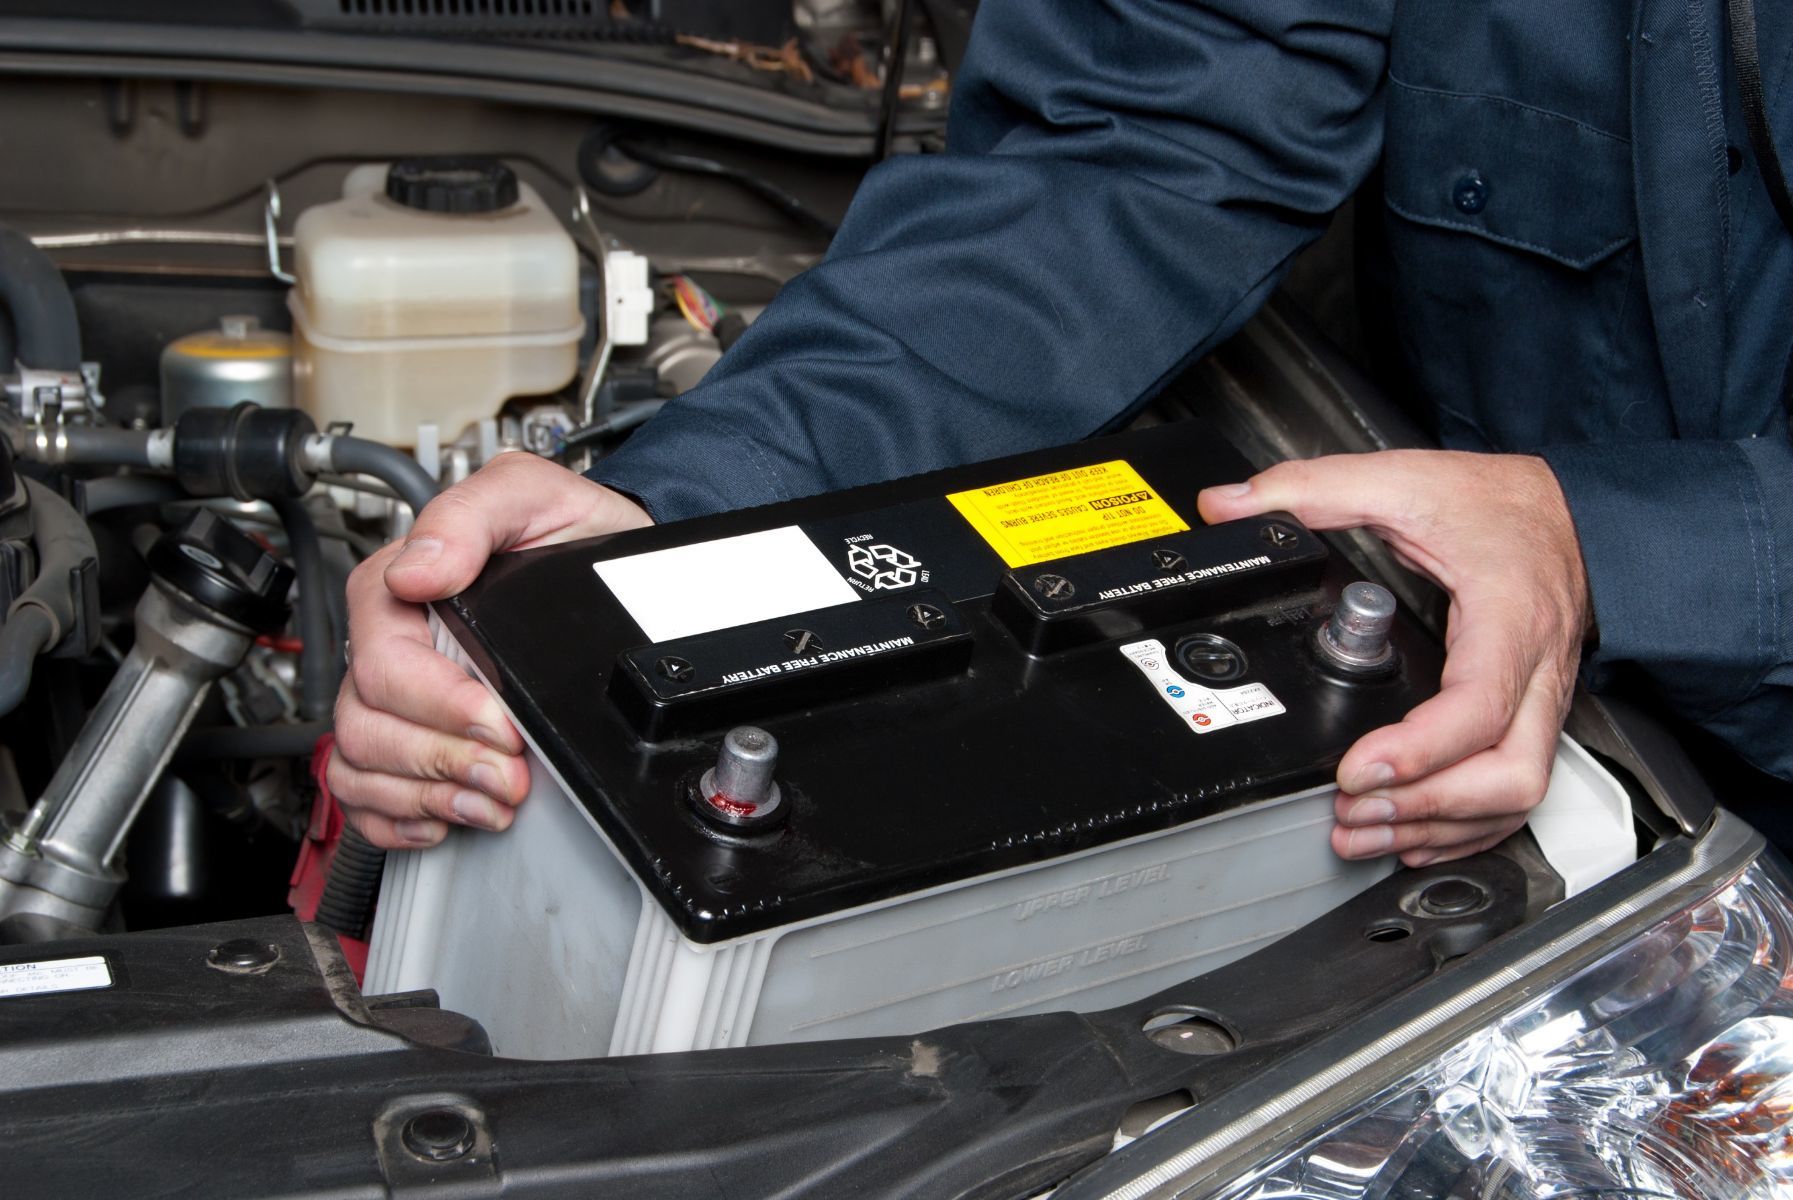 Booster batterie : comment recharger sa voiture, combien ça coûte ?